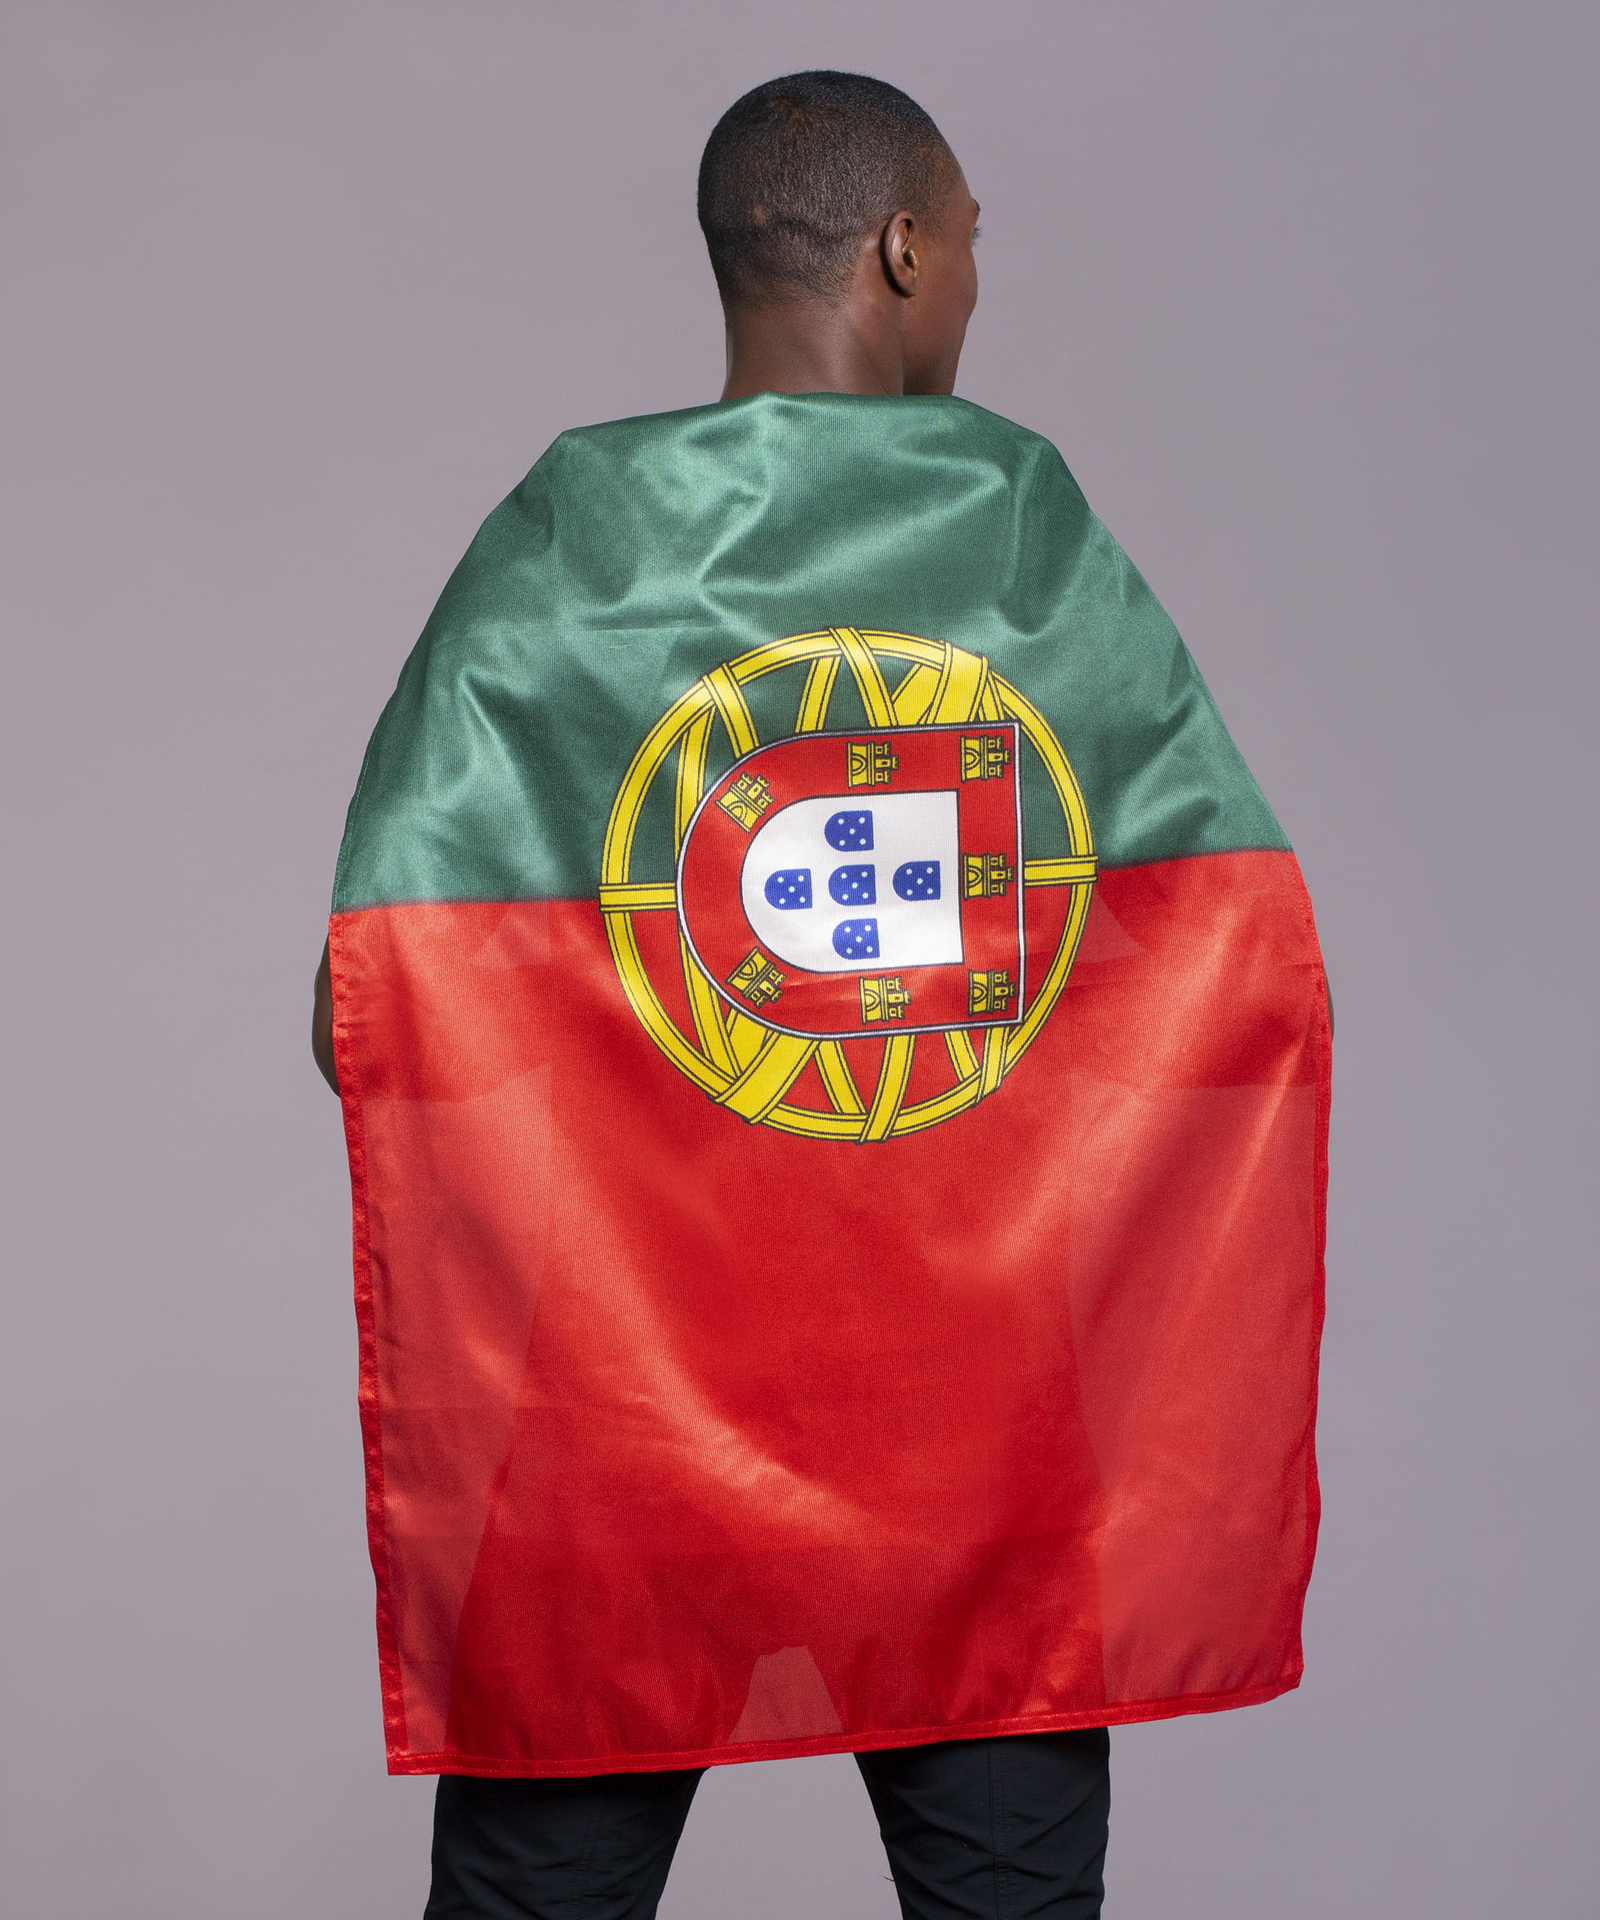 Drapeau Portugal-Coti Jouets, spécialiste événementiel, fan de l'Euro 2016  de foot, gamme complète pour supporter